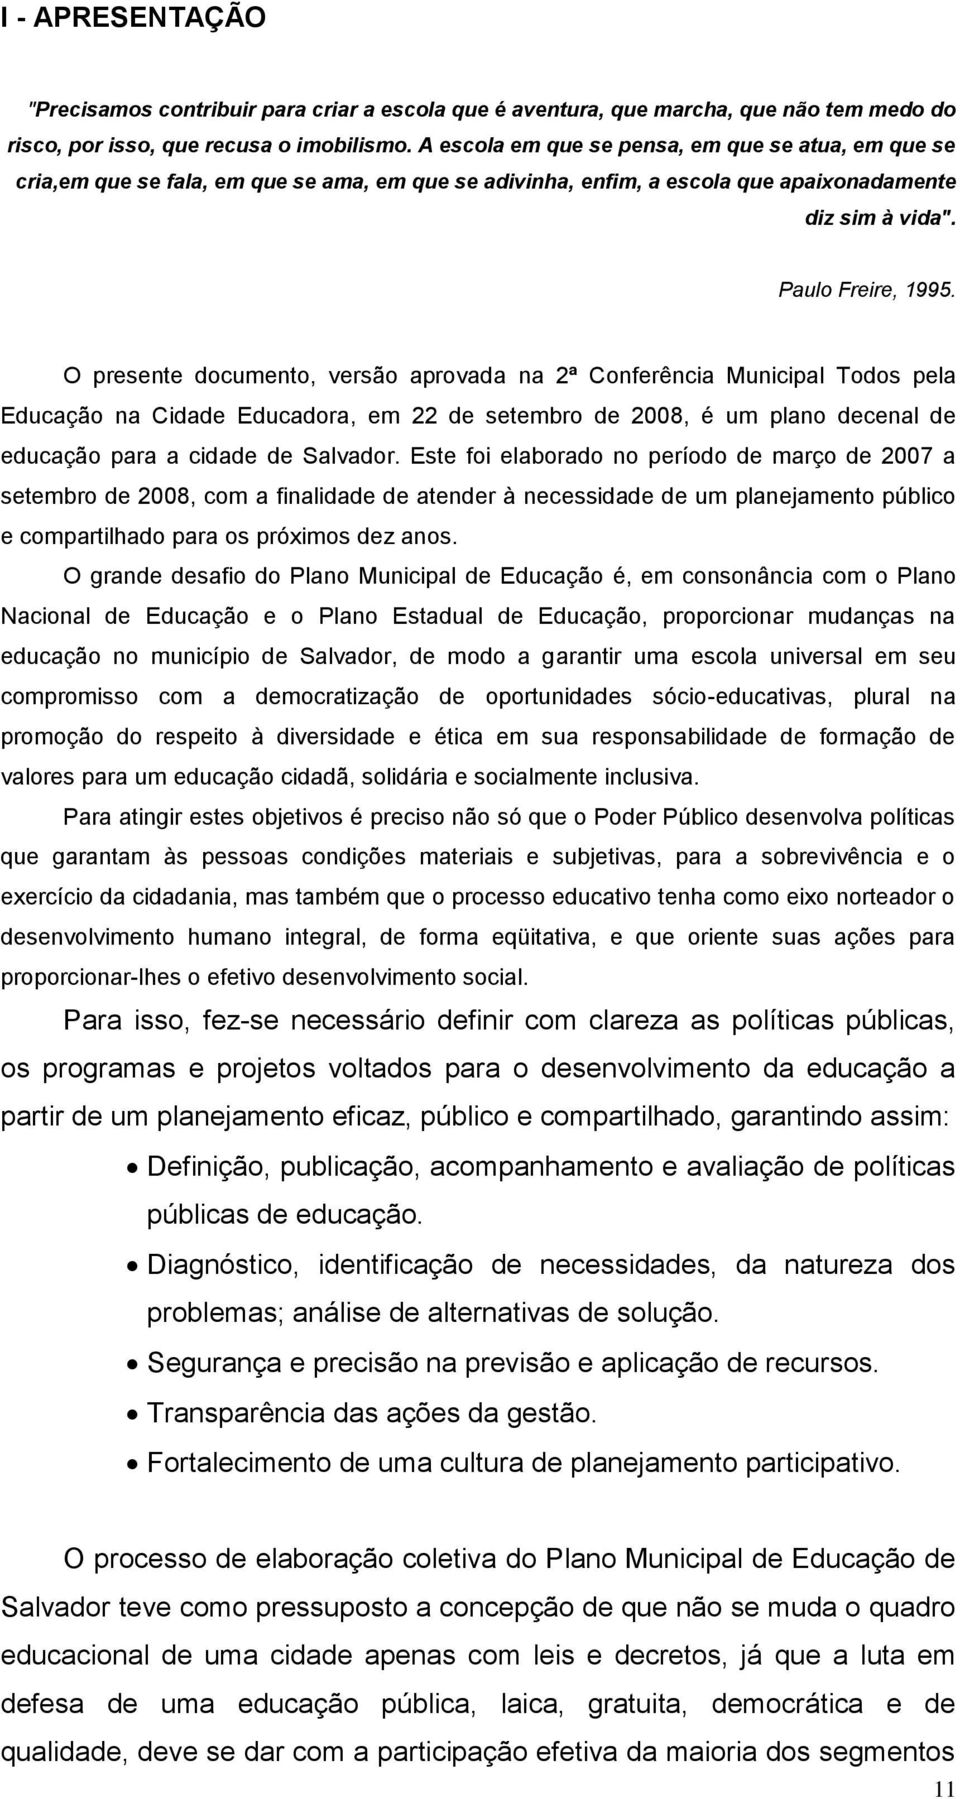 O presente documento, versão aprovada na 2ª Conferência Municipal Todos pela Educação na Cidade Educadora, em 22 de setembro de 2008, é um plano decenal de educação para a cidade de Salvador.